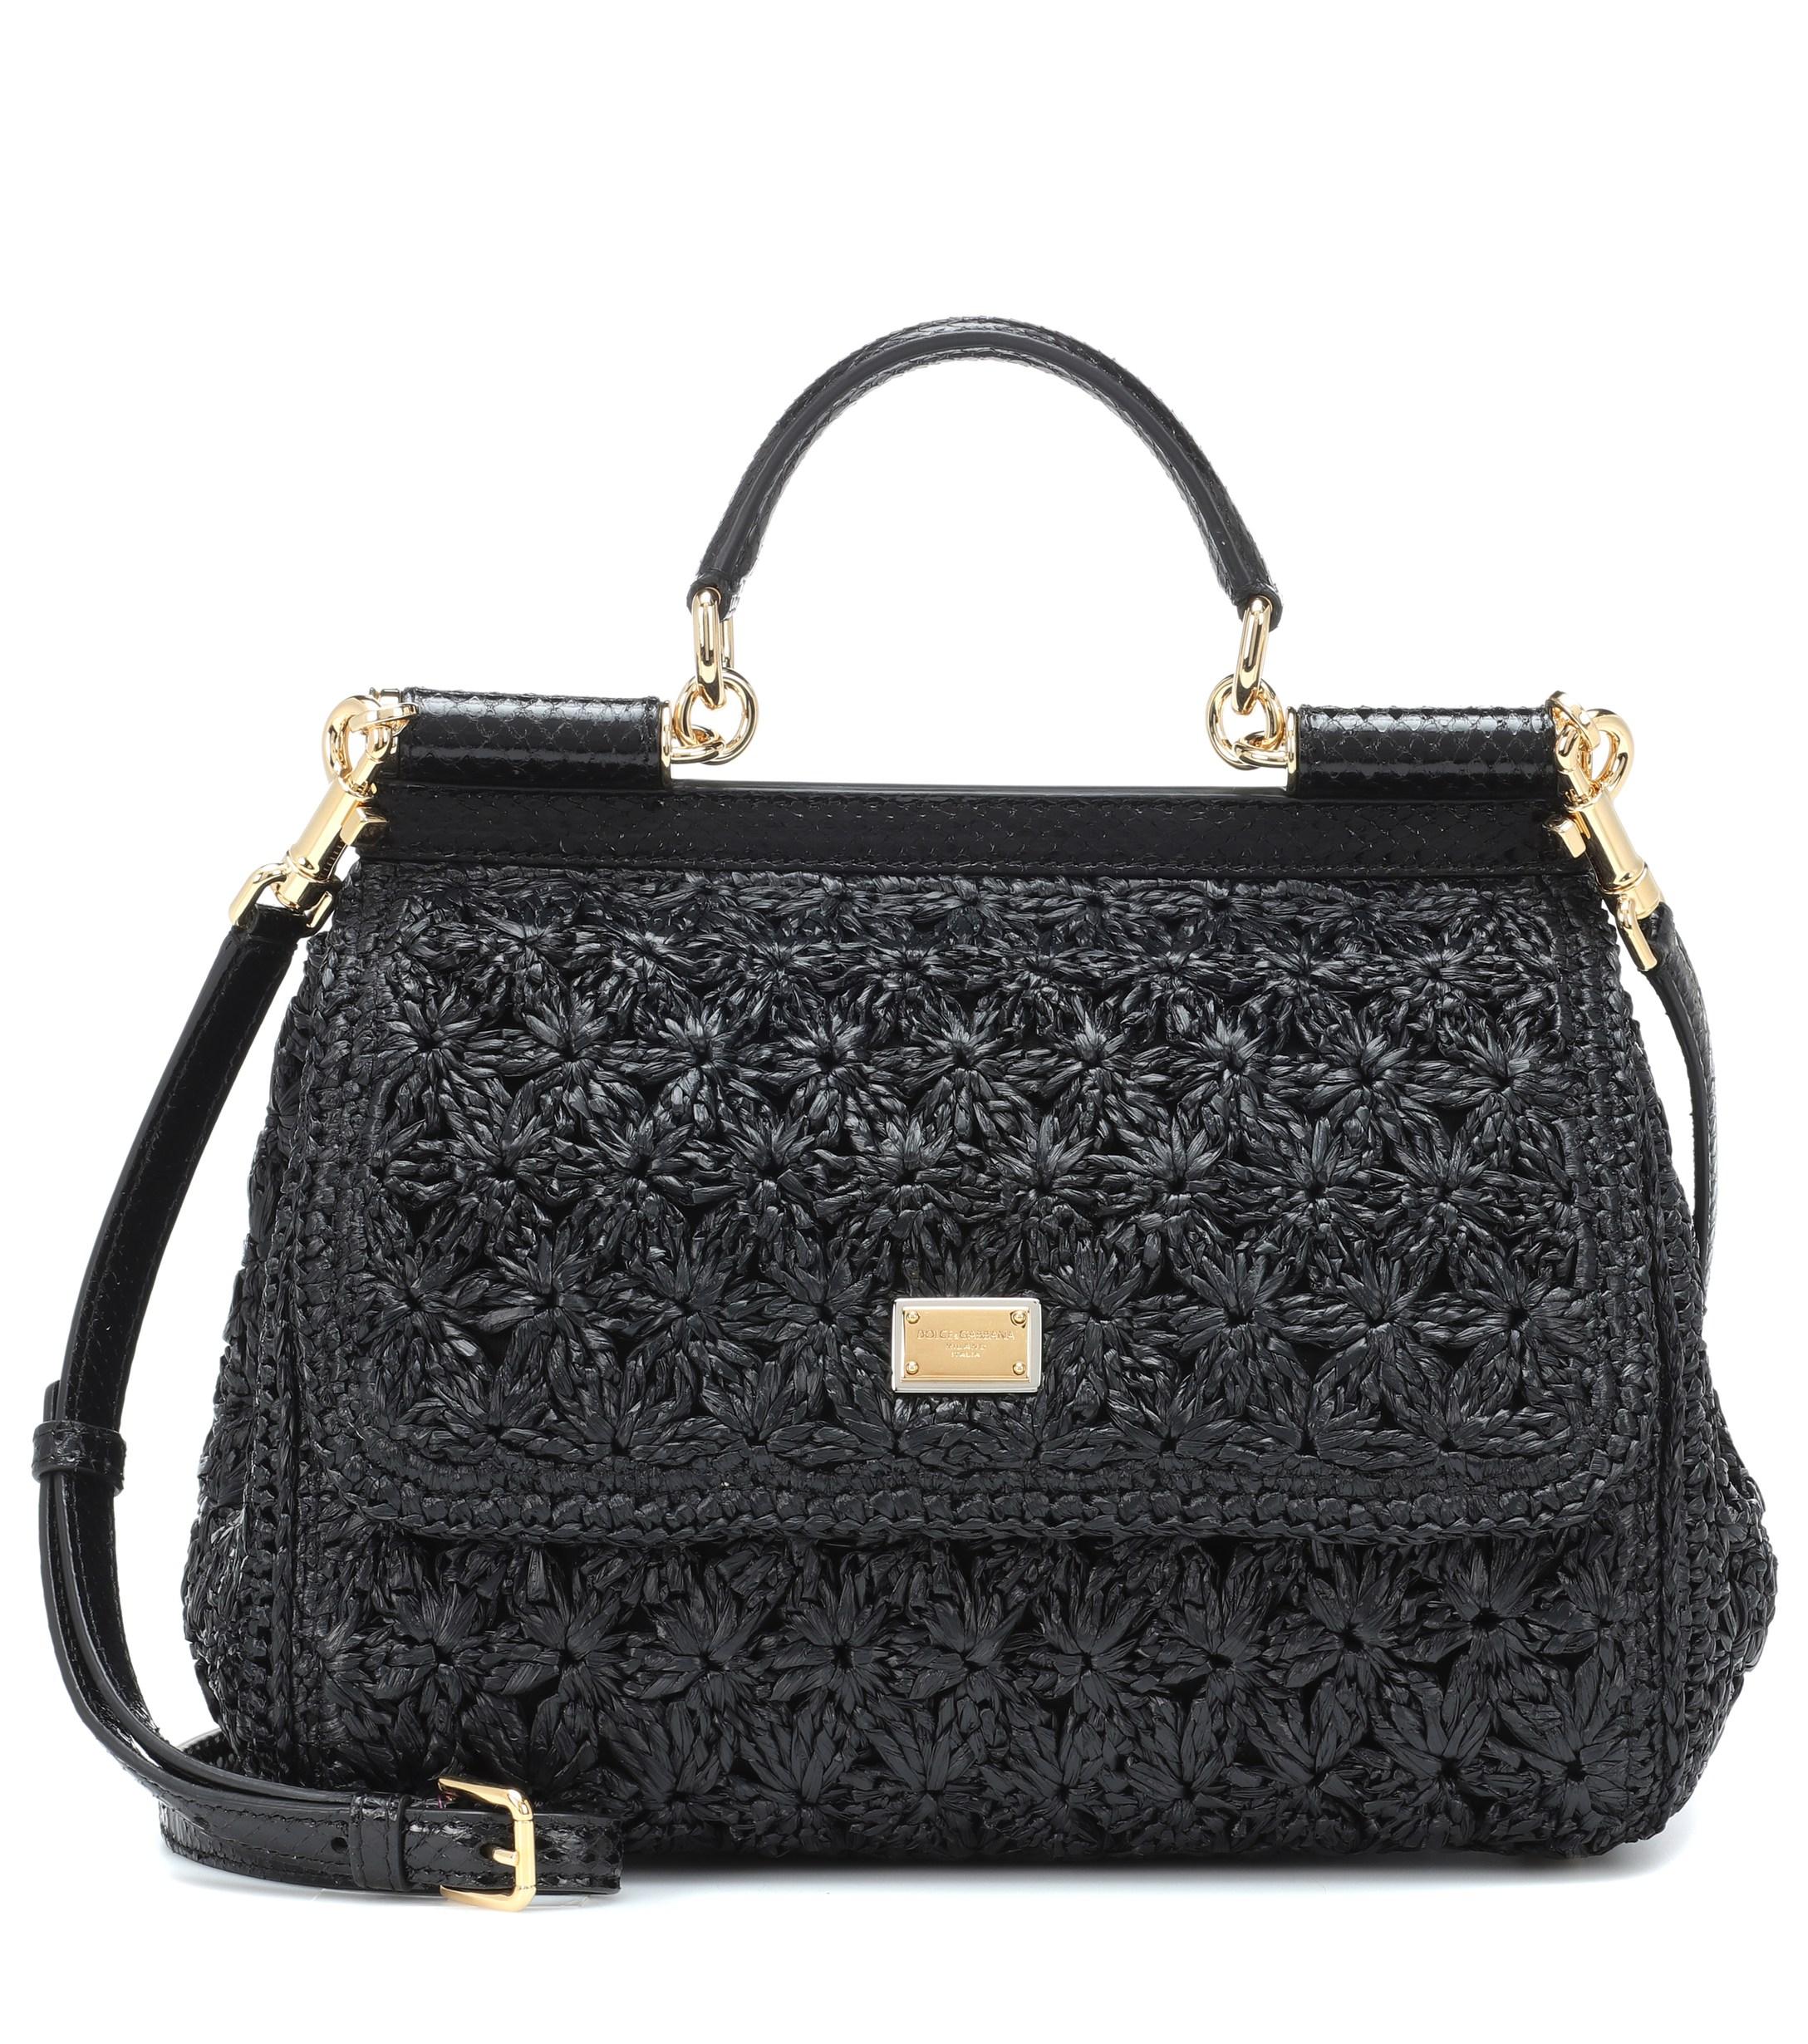 Dolce & Gabbana Leather Medium Raffia Crochet Sicily Bag in Black - Lyst